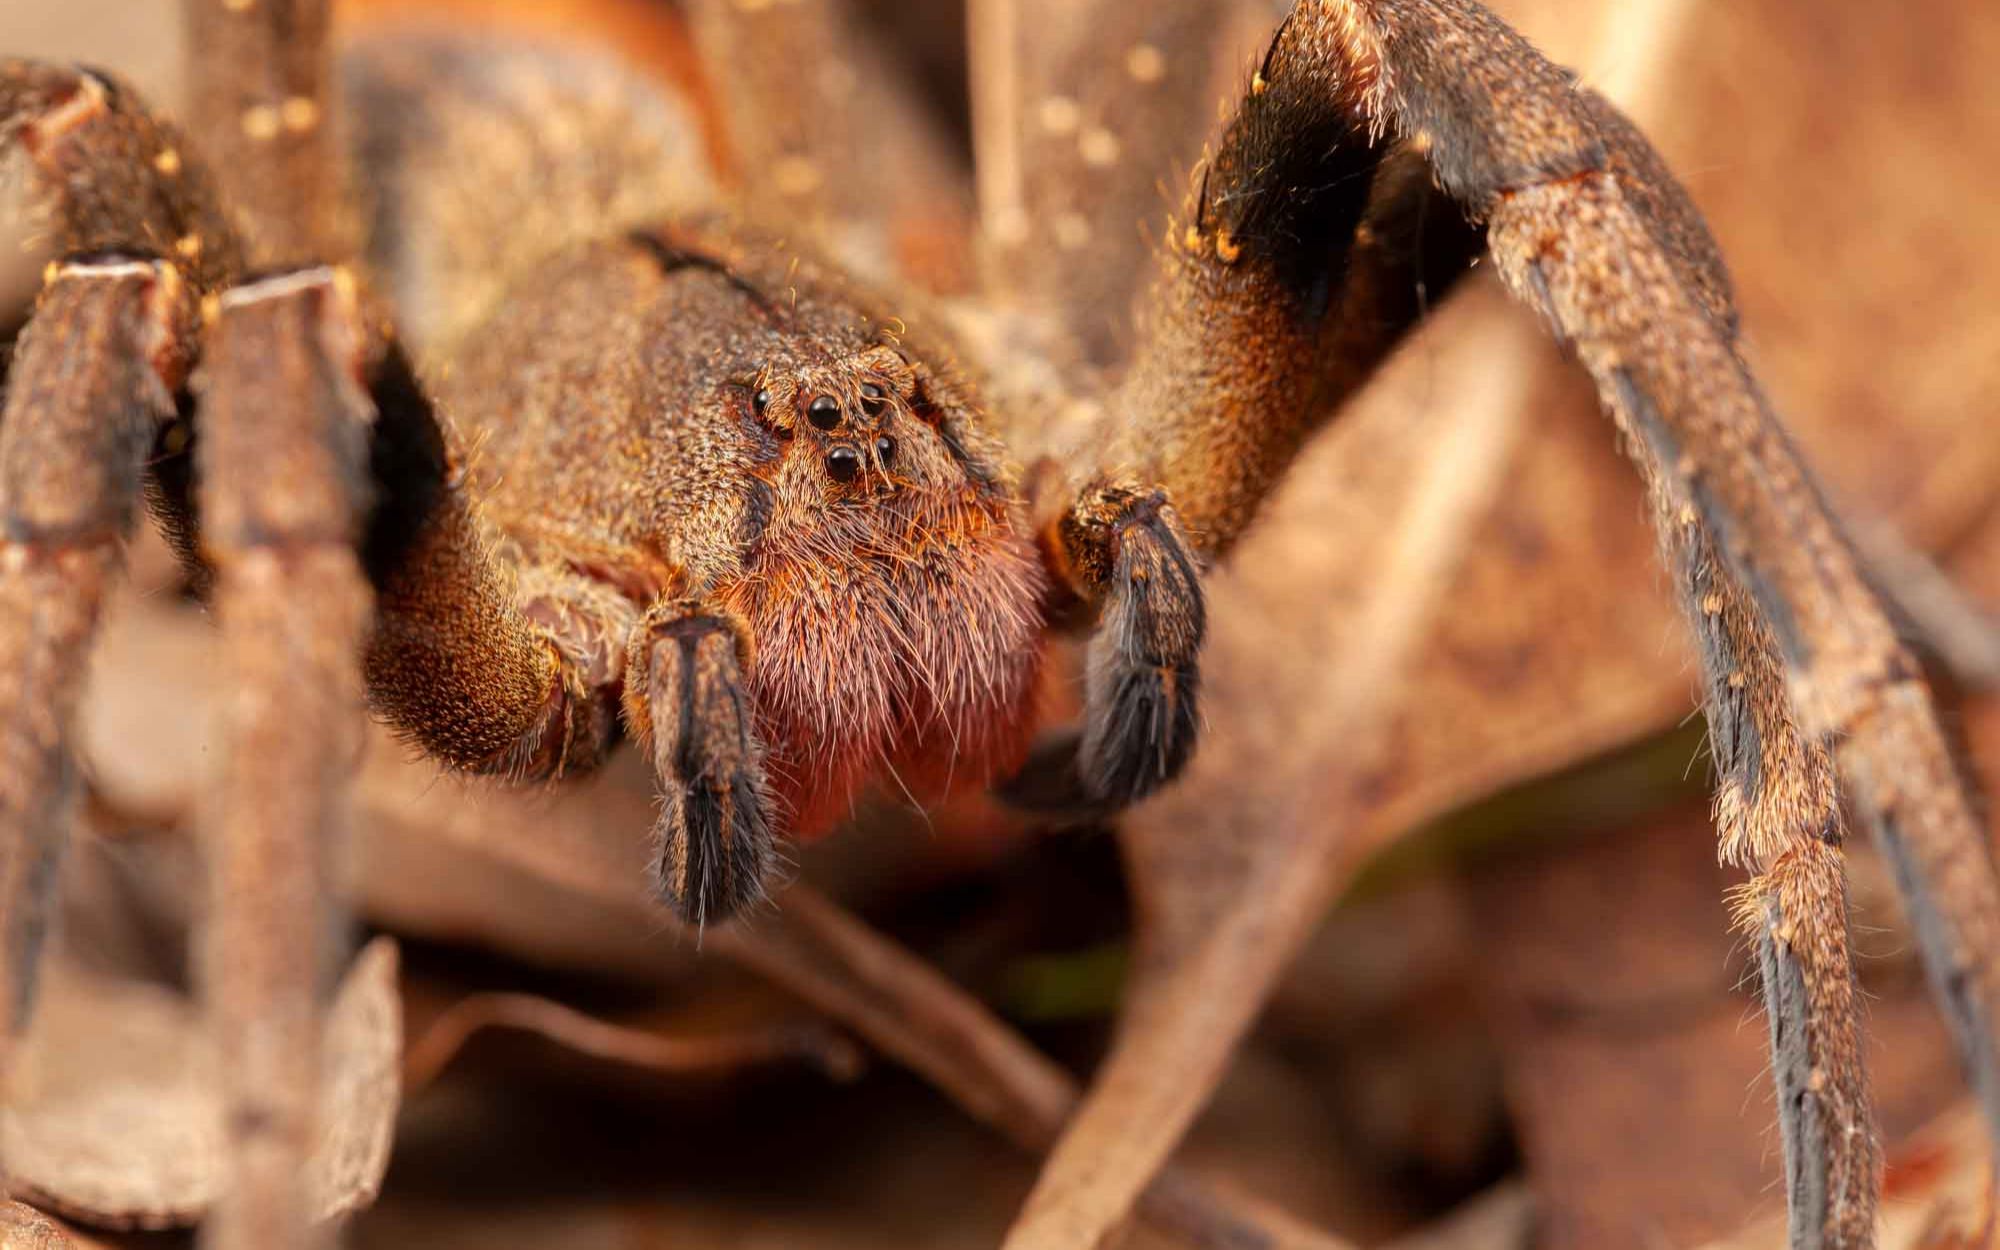 【世界十大有毒动物】第七名 巴西游走蛛 世界上最毒蜘蛛 动物伟哥?